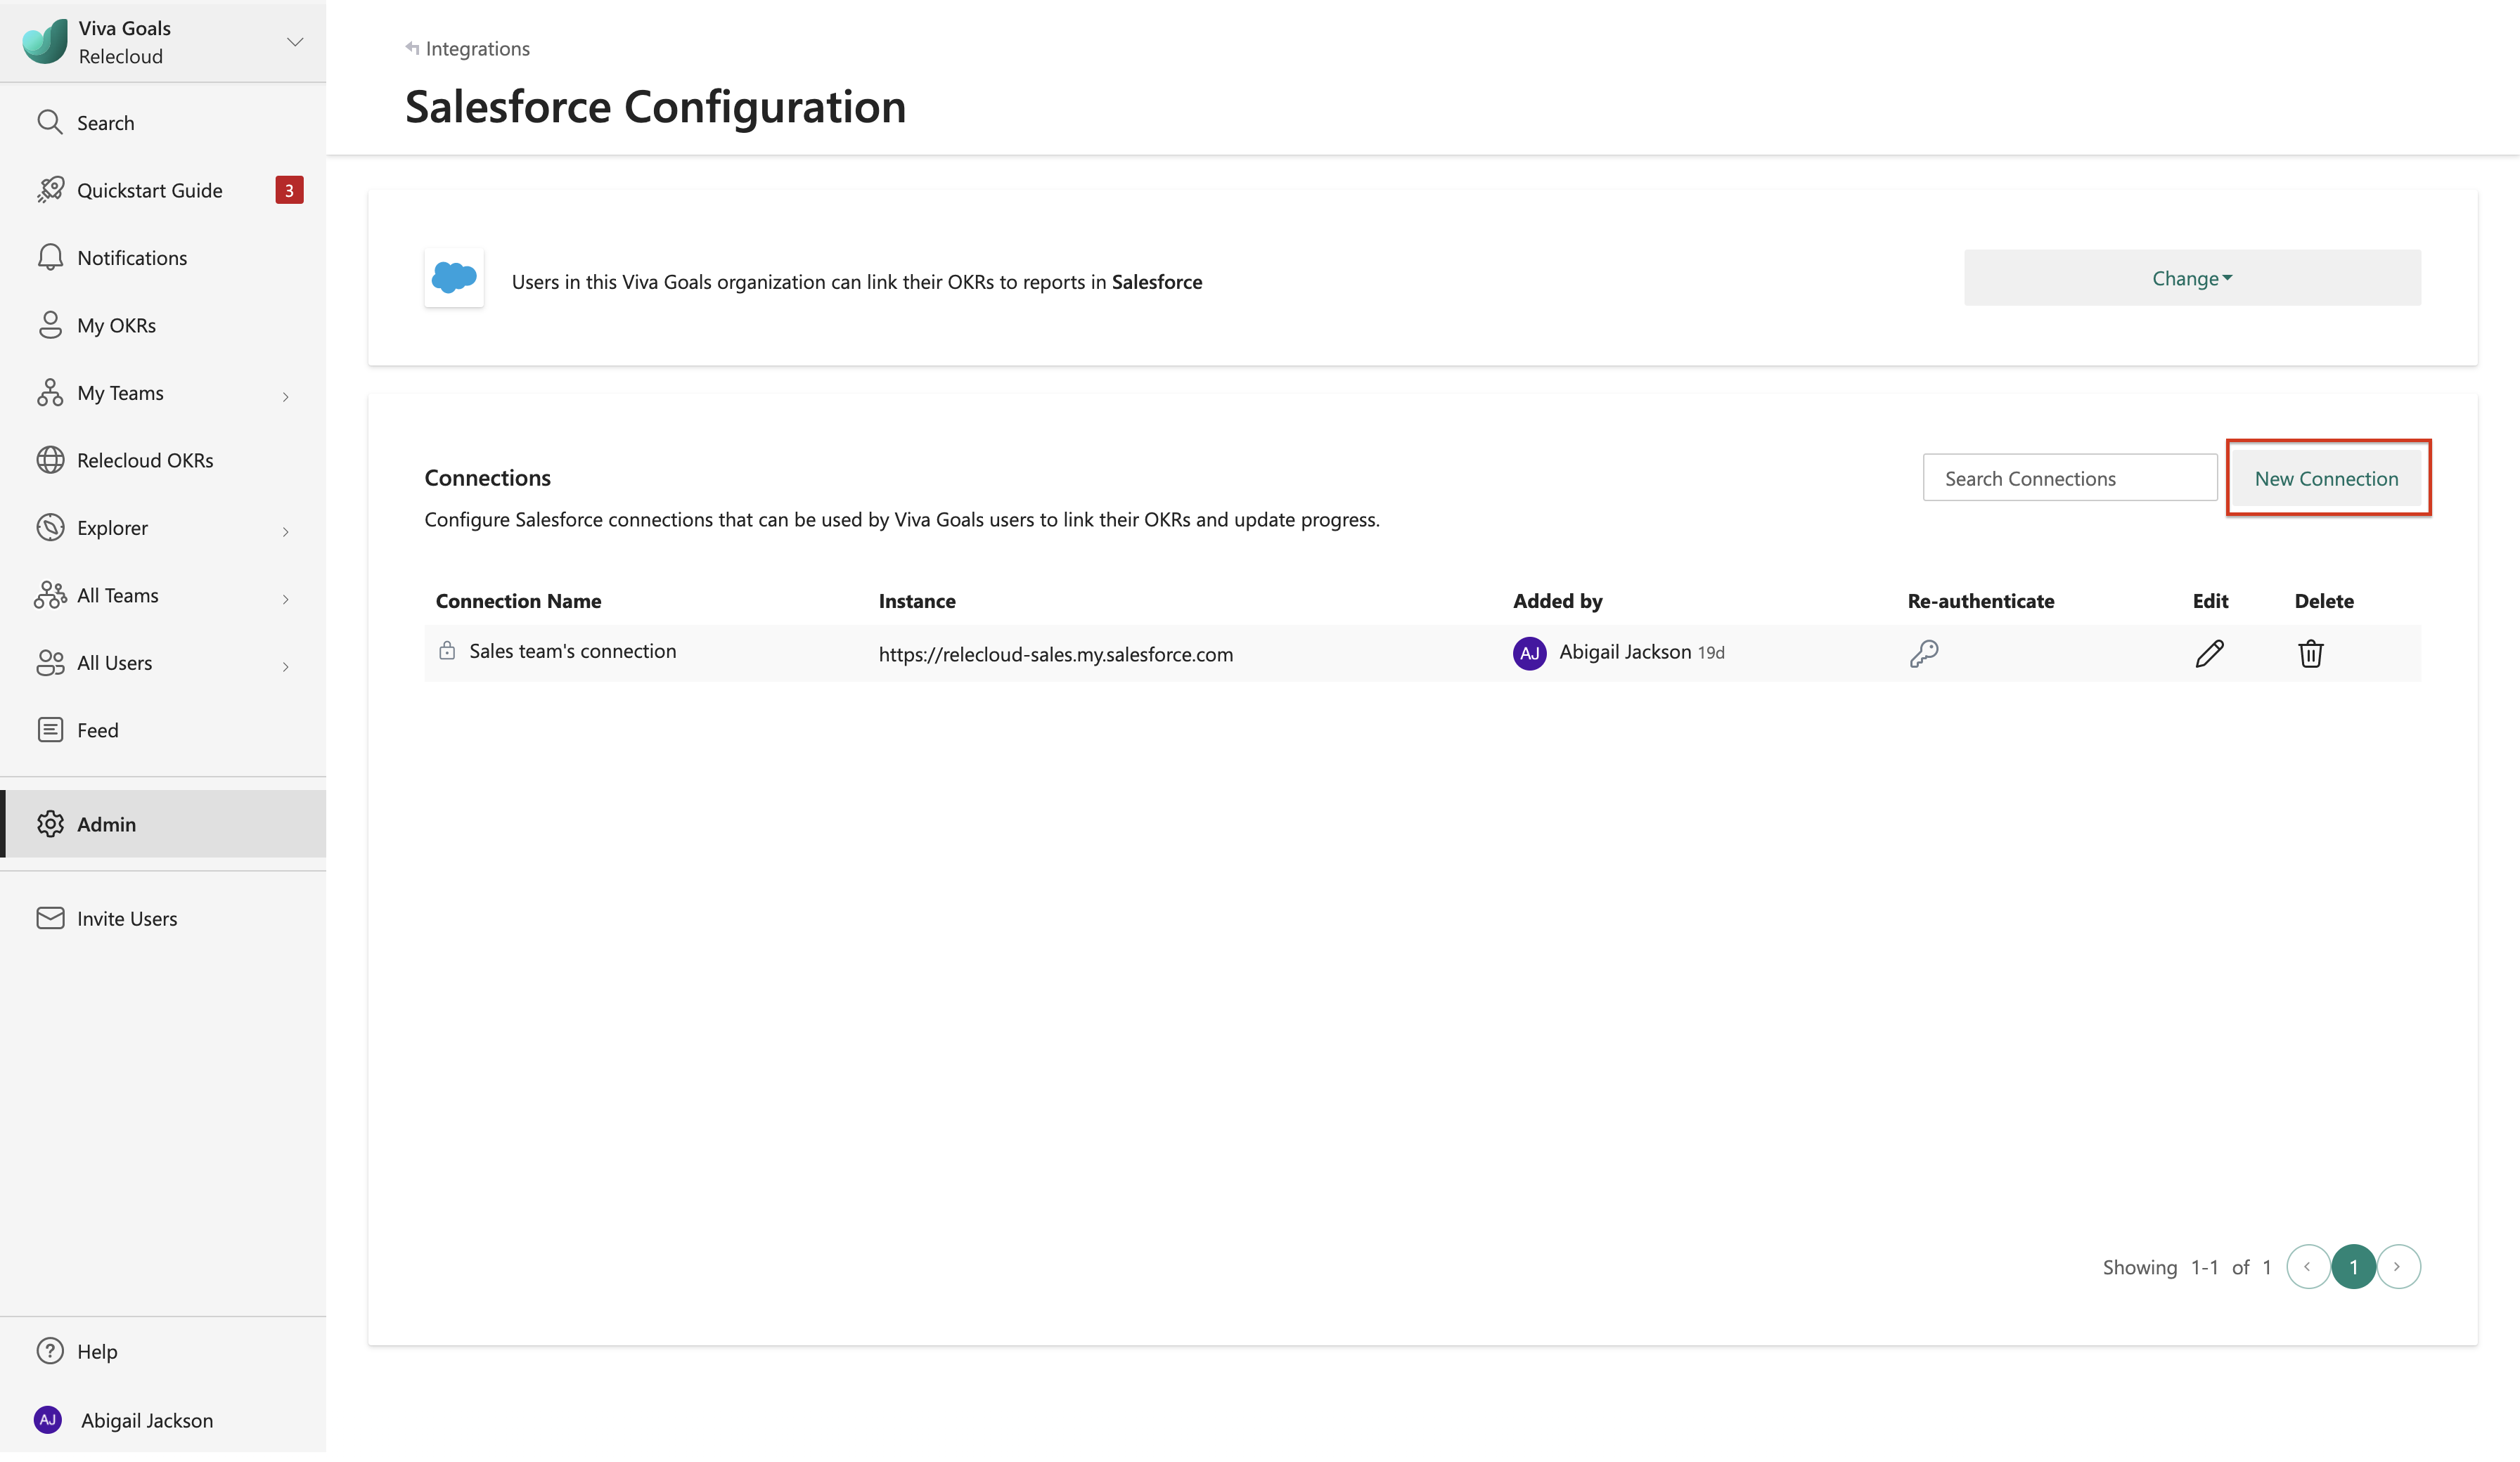 屏幕截图显示了在 Viva Goals 中为 Salesforce 选择“新建连接”的位置。